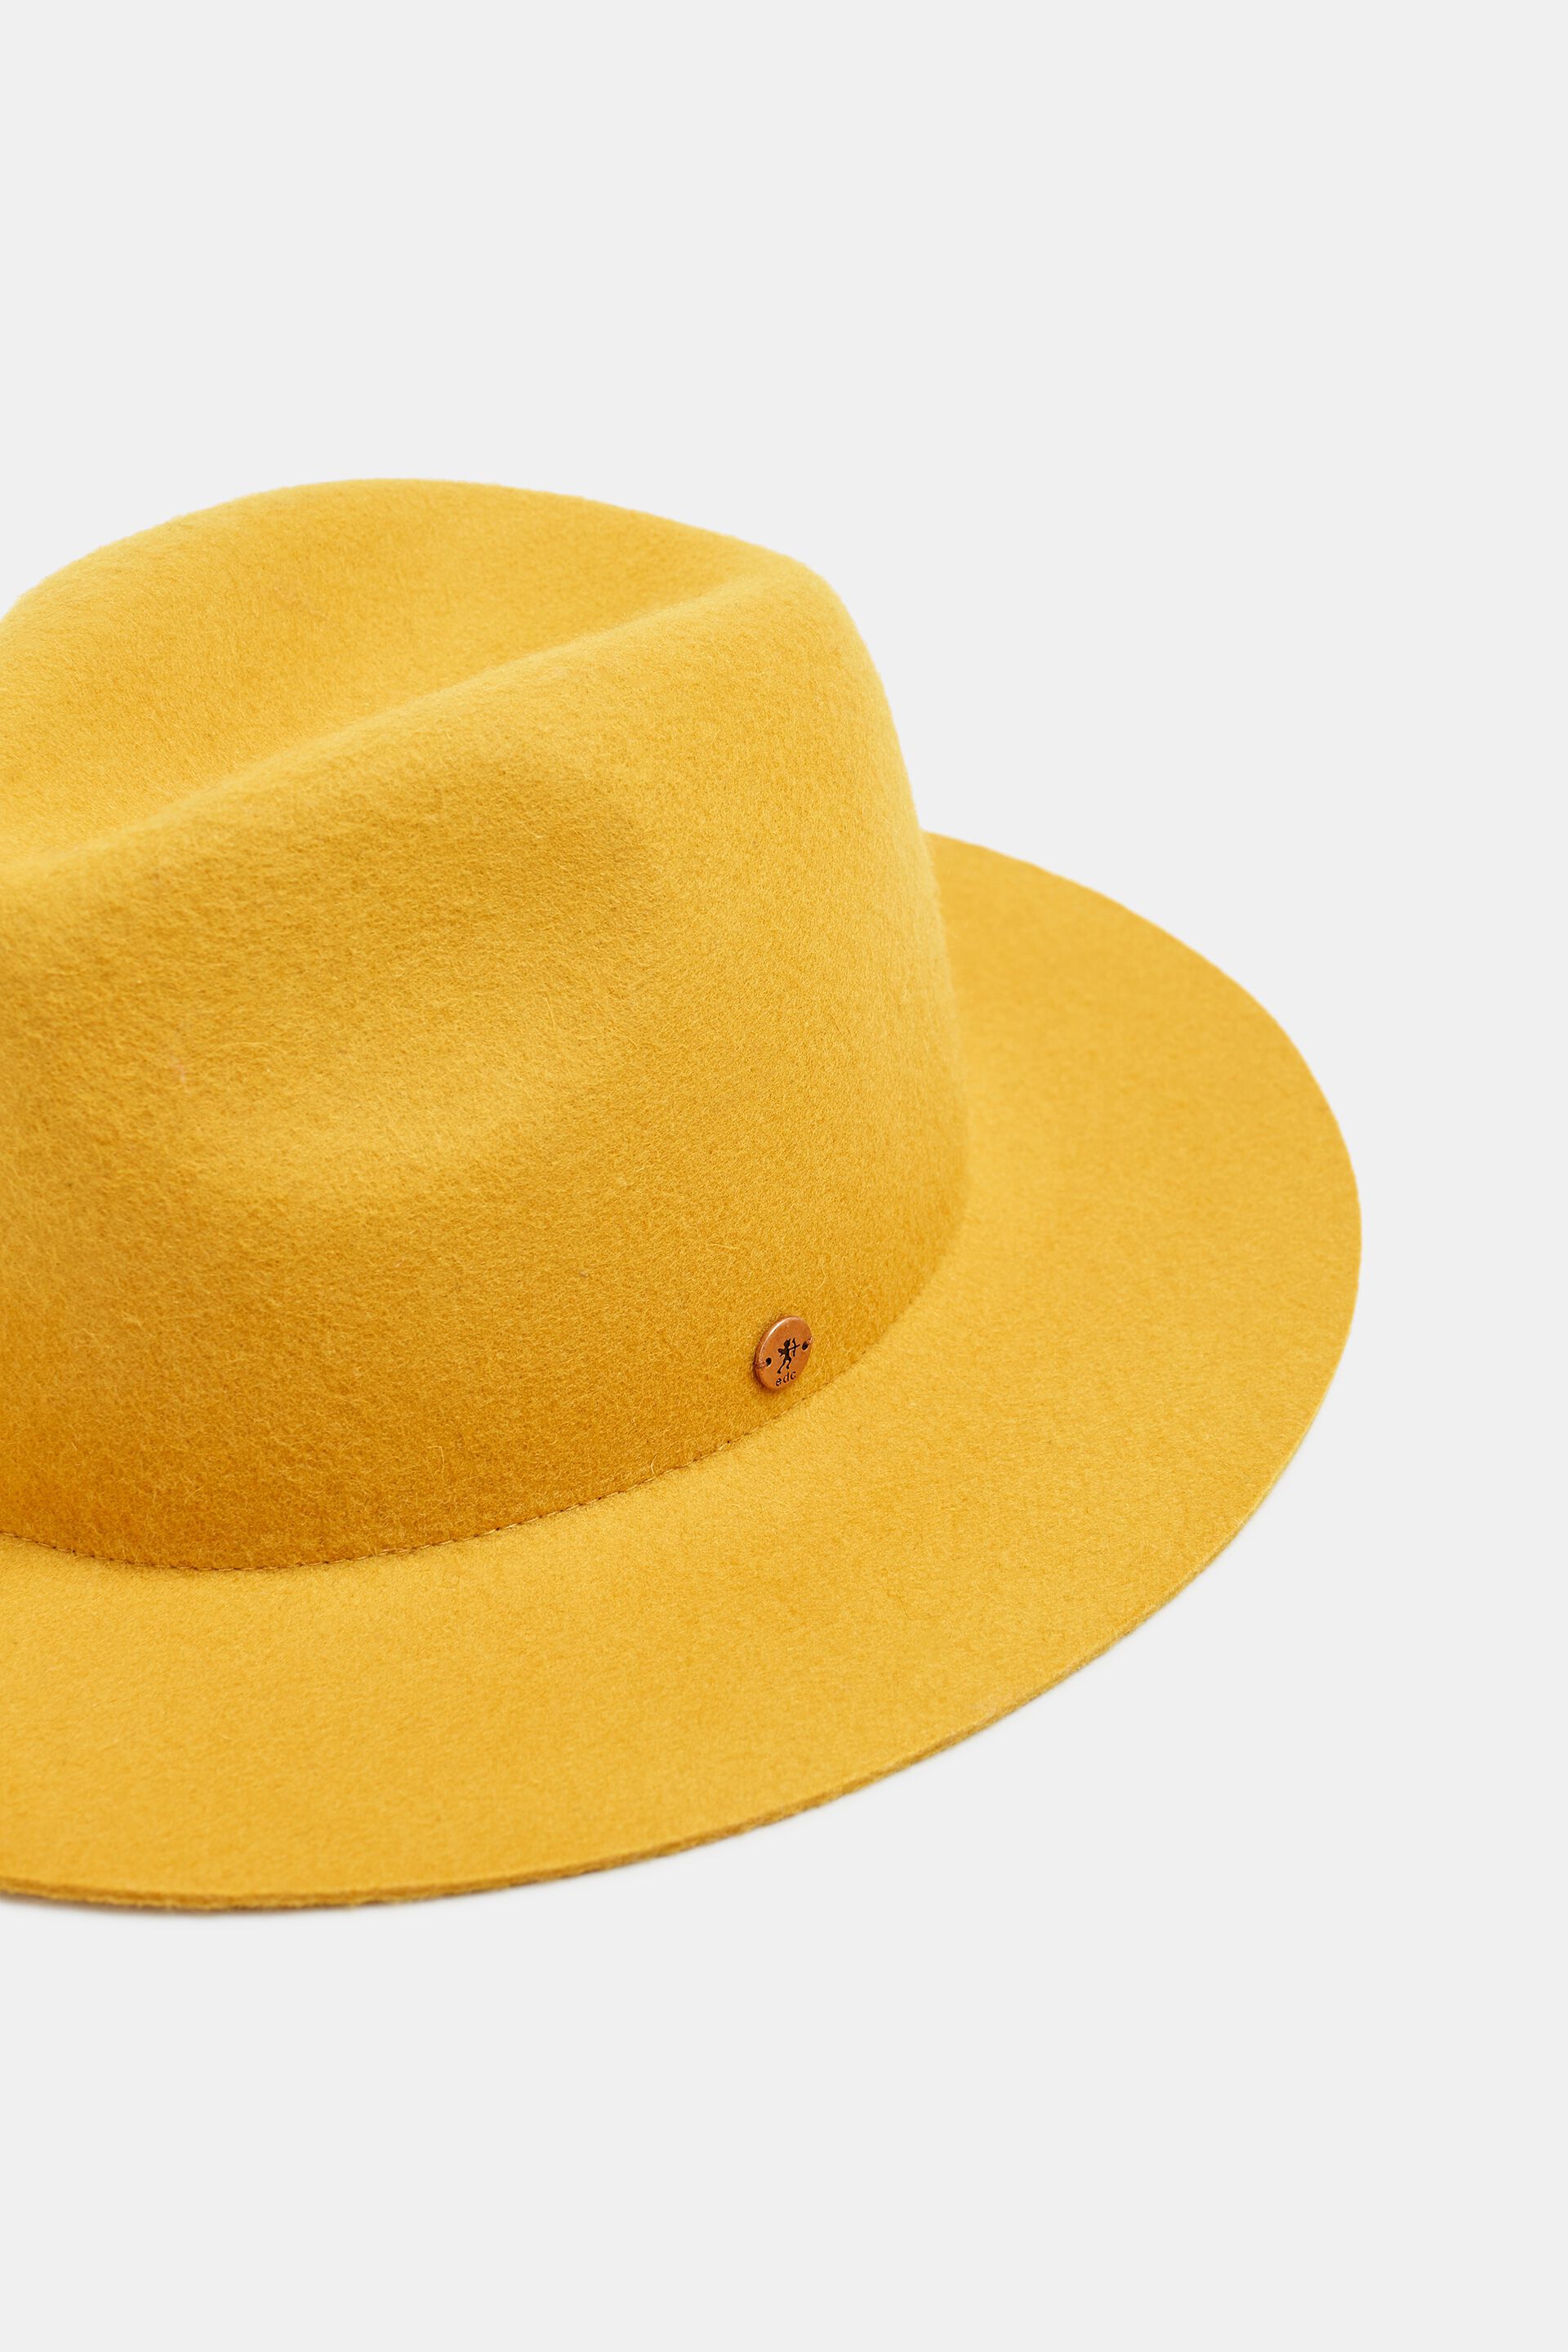 Hut von Esprit aus 100% Wolle Accessoires Hüte Wollhüte gr.M 